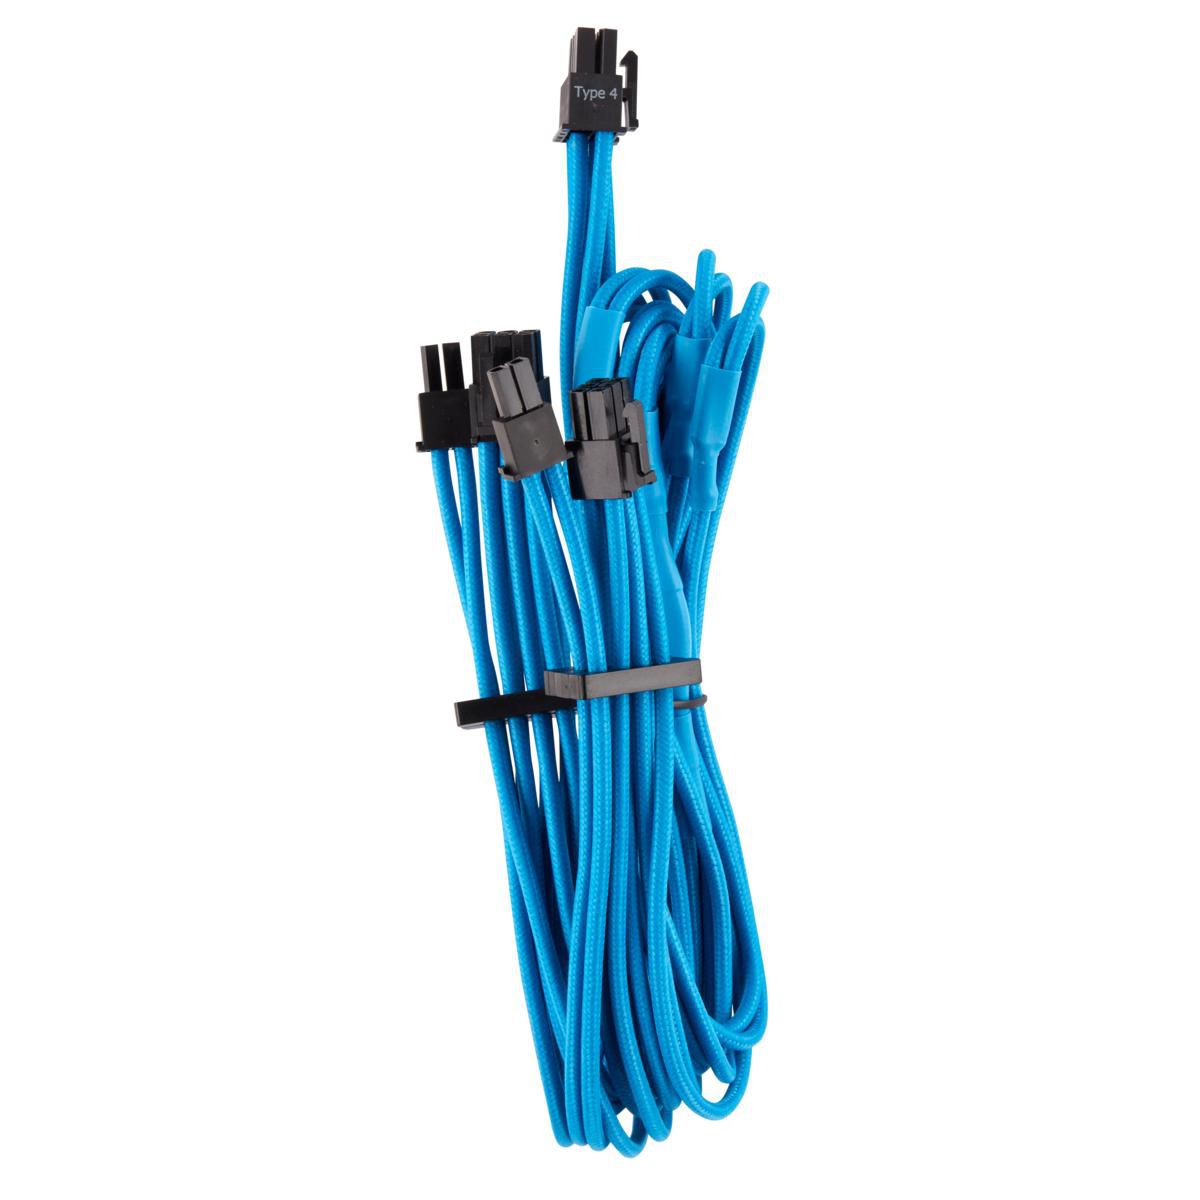 CORSAIR Split PCIe Cable Dual Connector blau